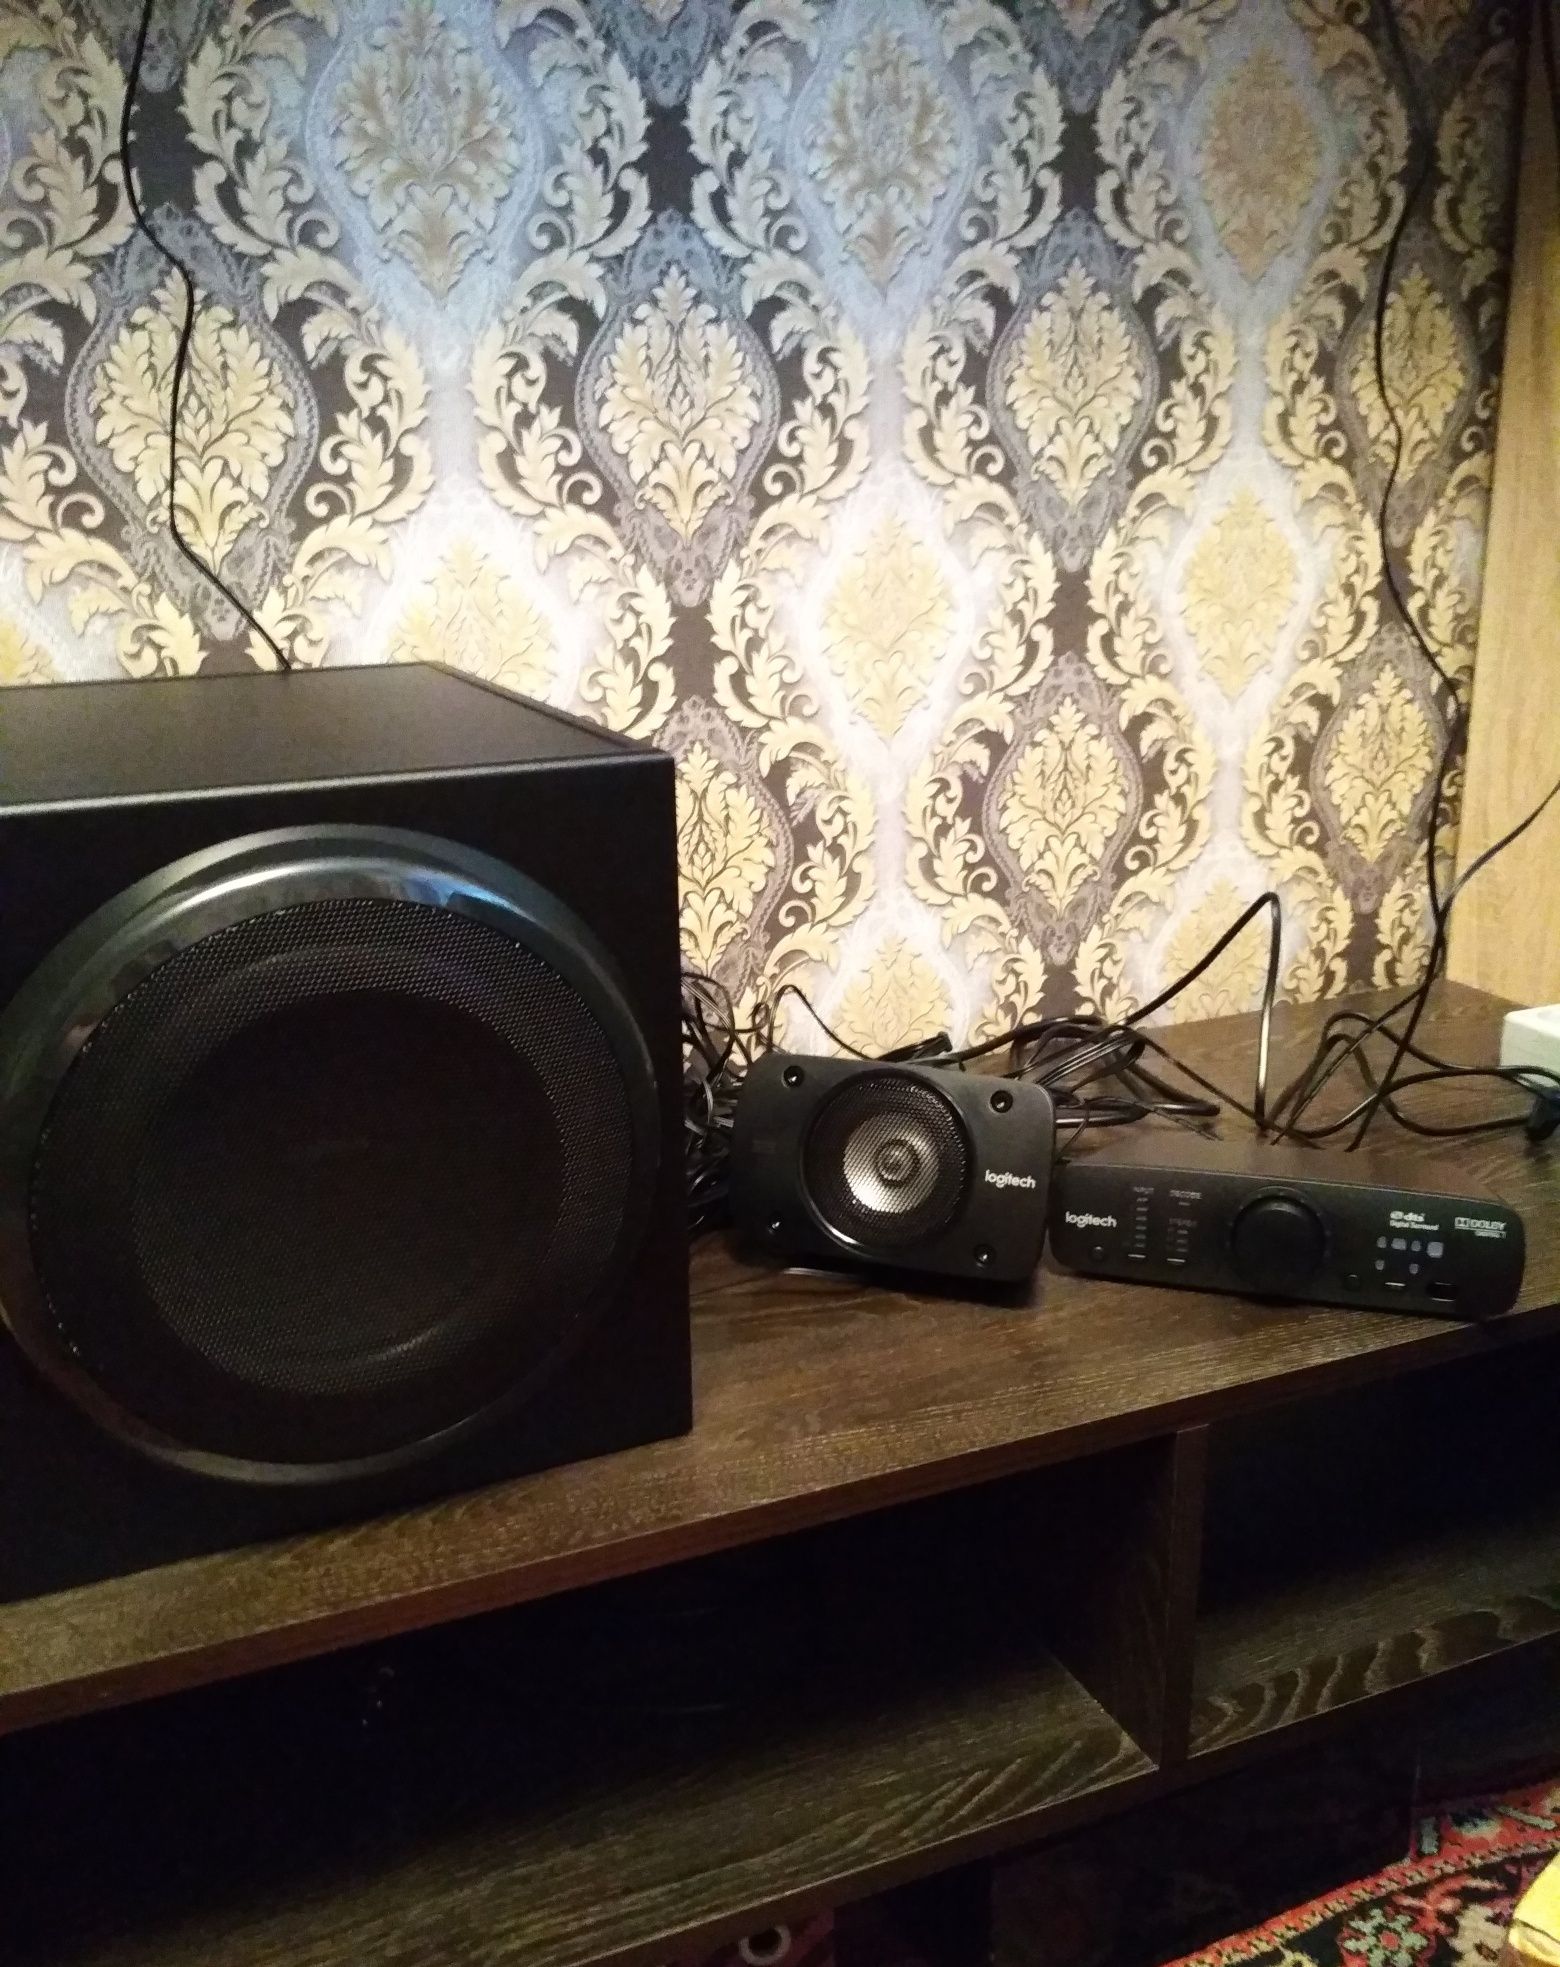 Logitech-Z906 Ultimate THX Surround sound